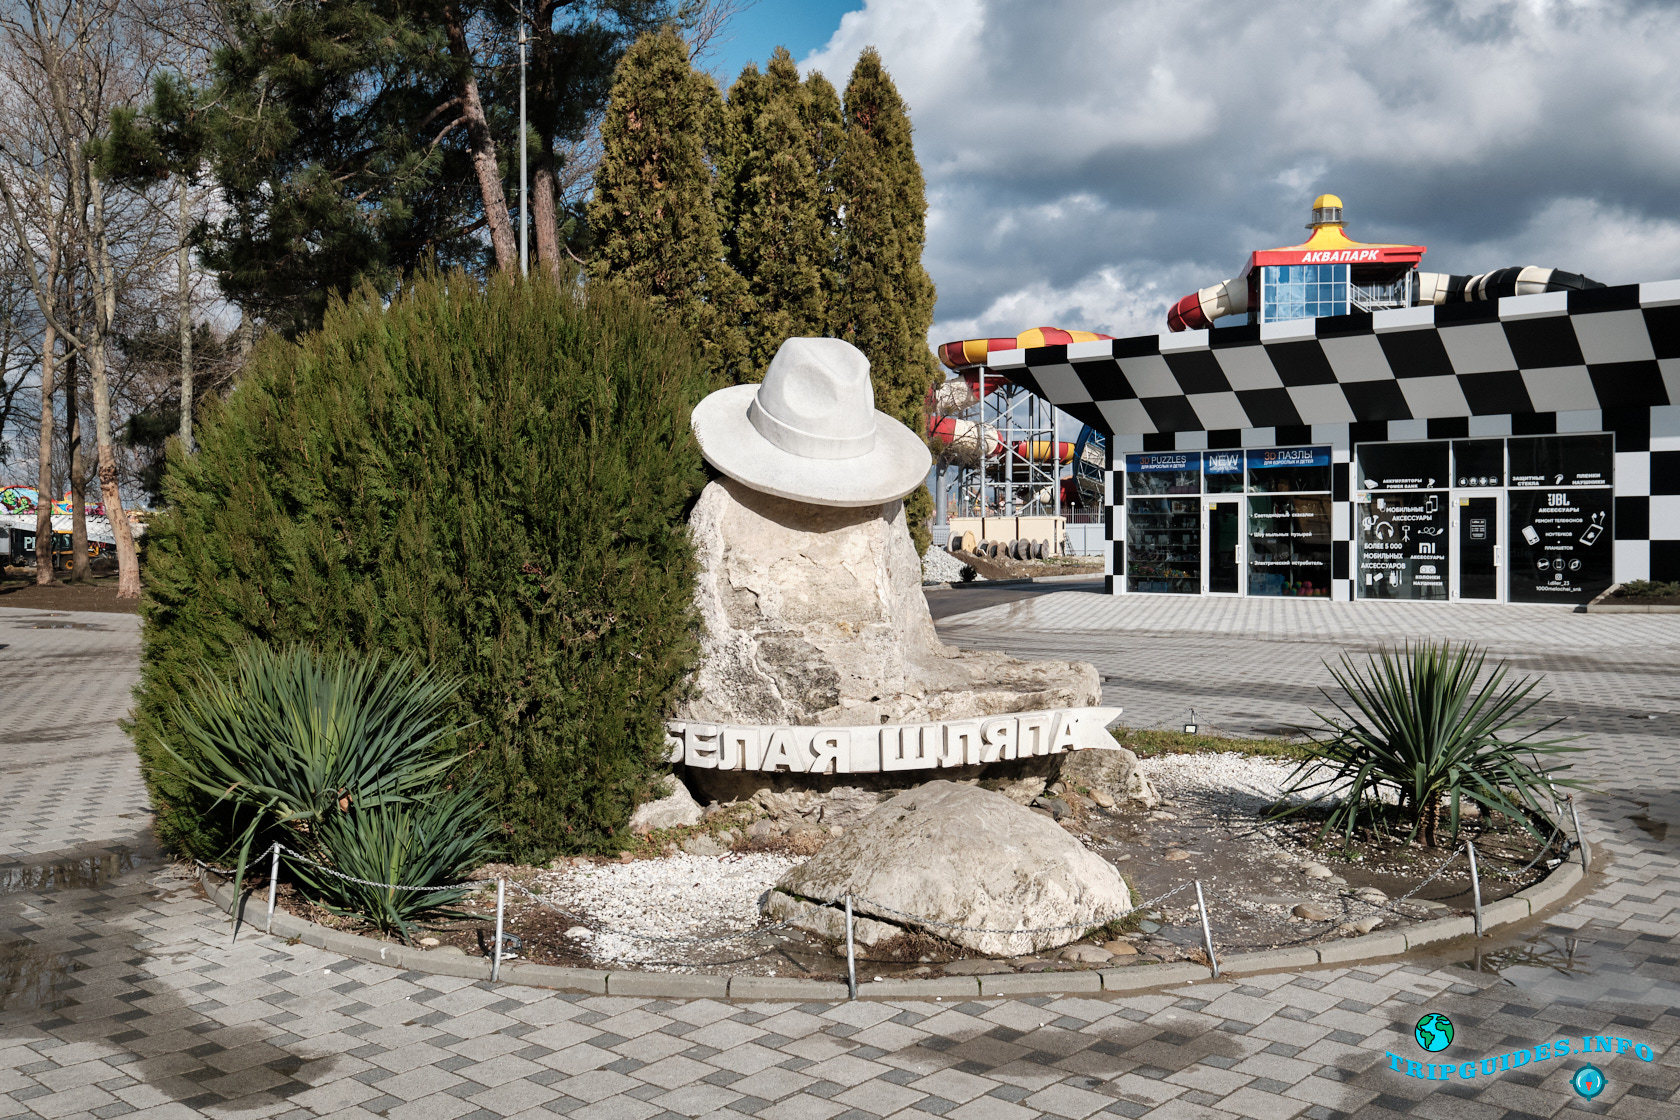 Памятник белой шляпе в Анапе